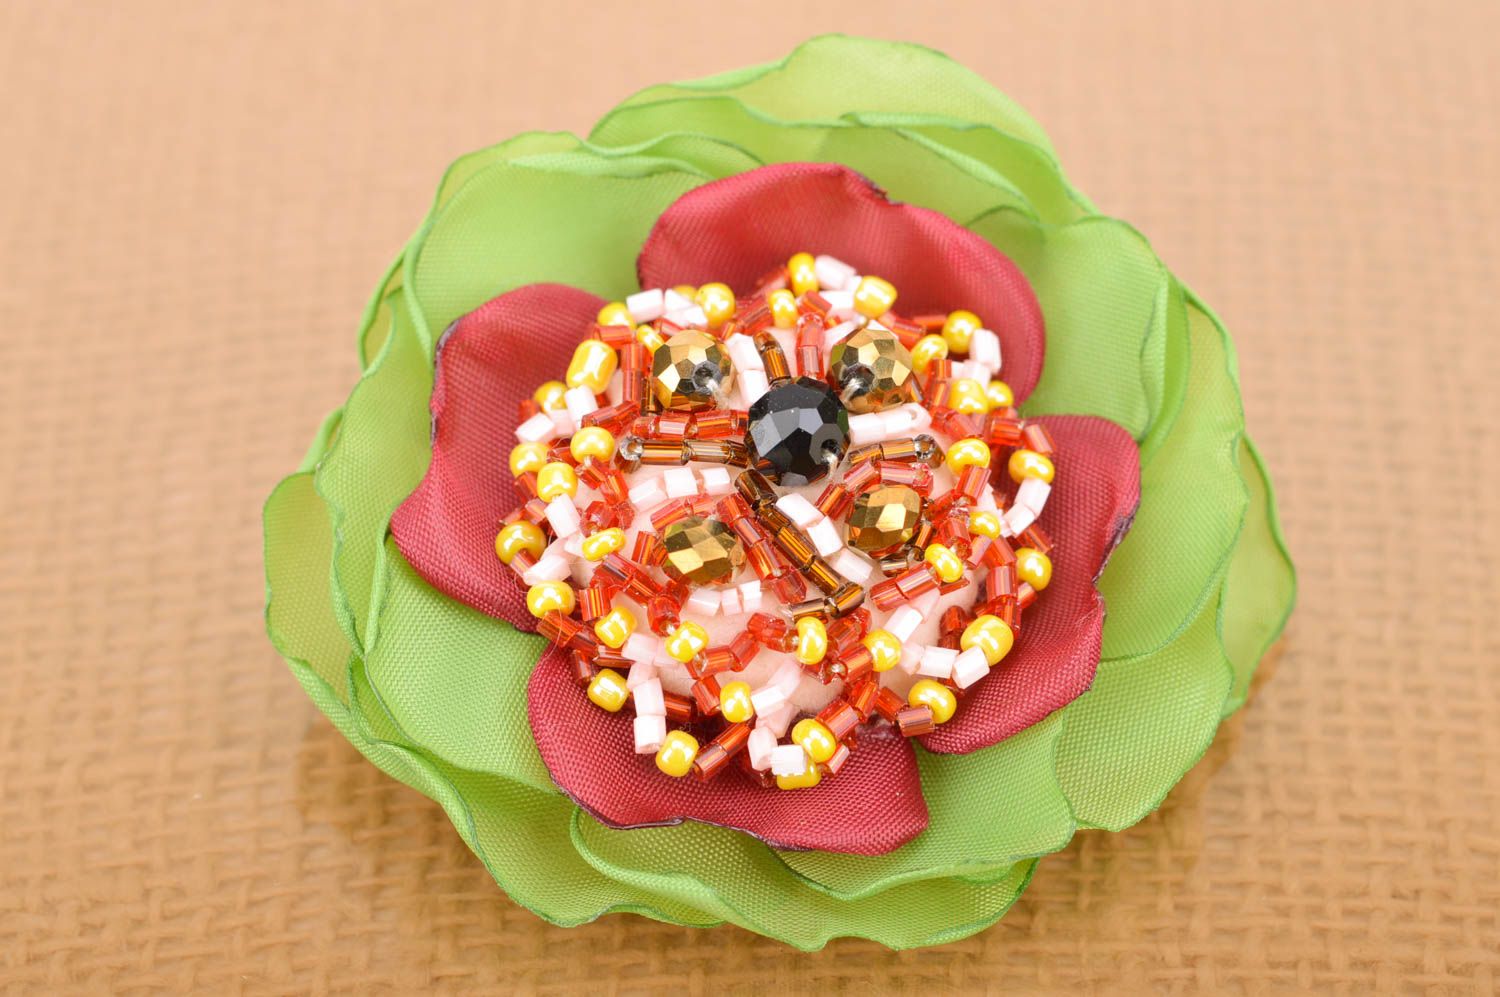 Брошь заколка в виде цветка из ткани с бисером ручной работы нарядная салатовая с бордовым фото 2